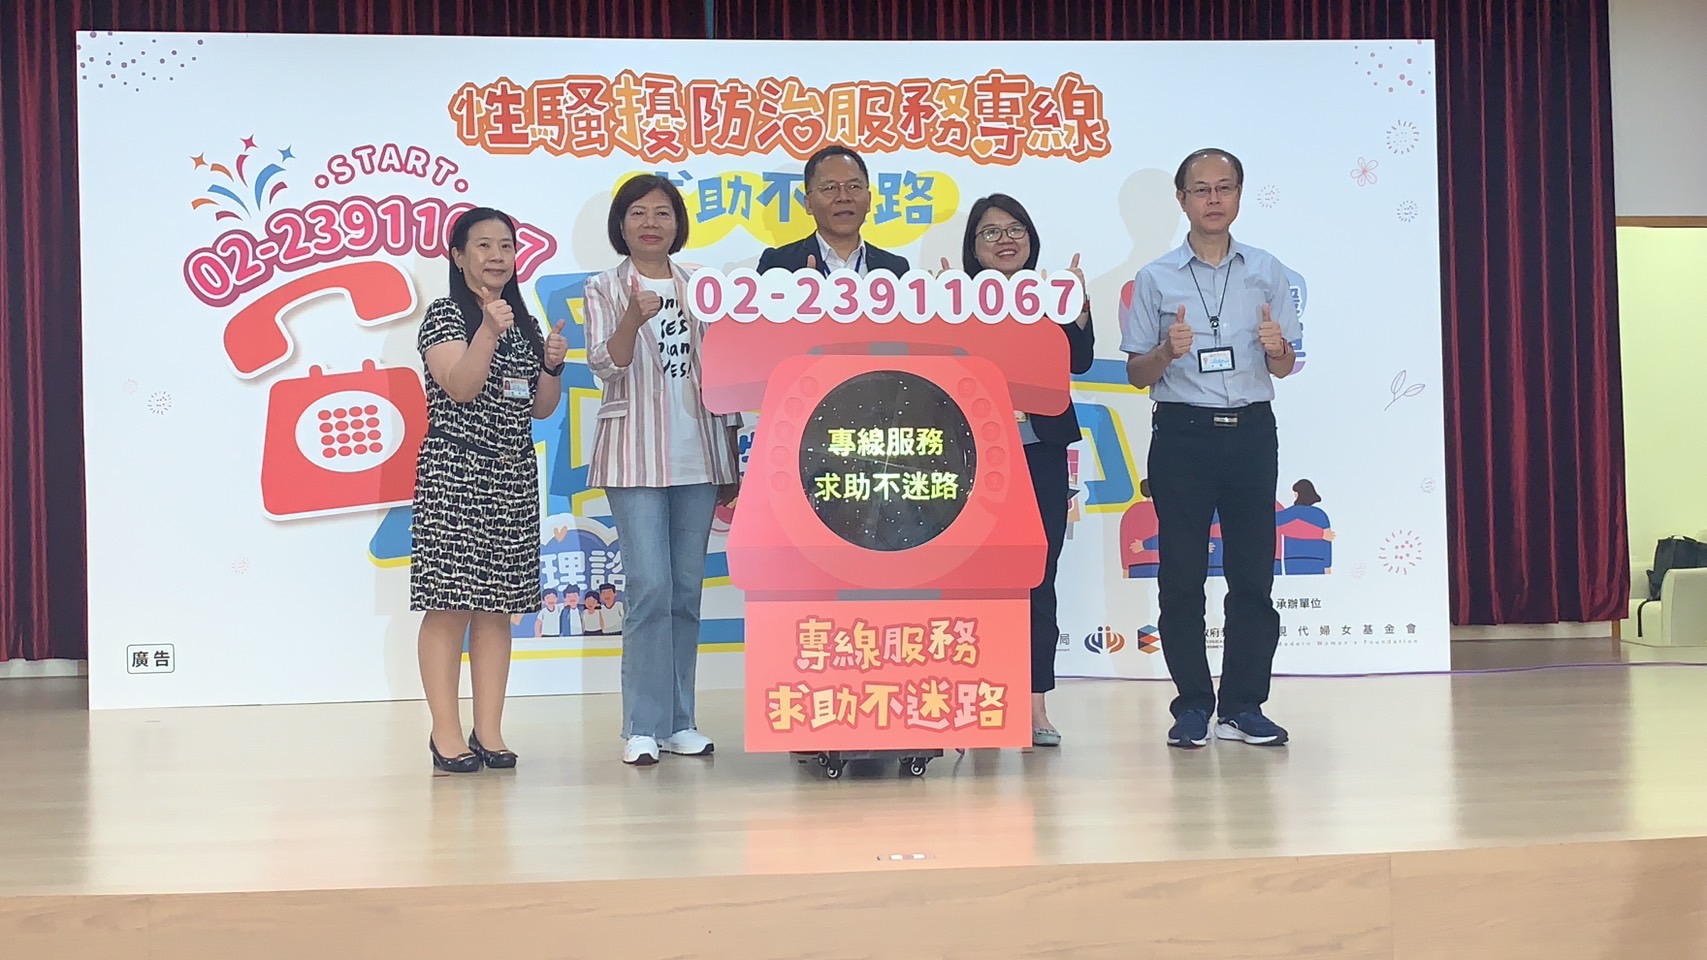 Chính quyền thành phố Đài Bắc thiết lập "Đường dây nóng phòng chống quấy rối tình dục", tư vấn các thông tin liên quan cho người dân. (Ảnh: Hiệp hội Phụ nữ Hiện đại)